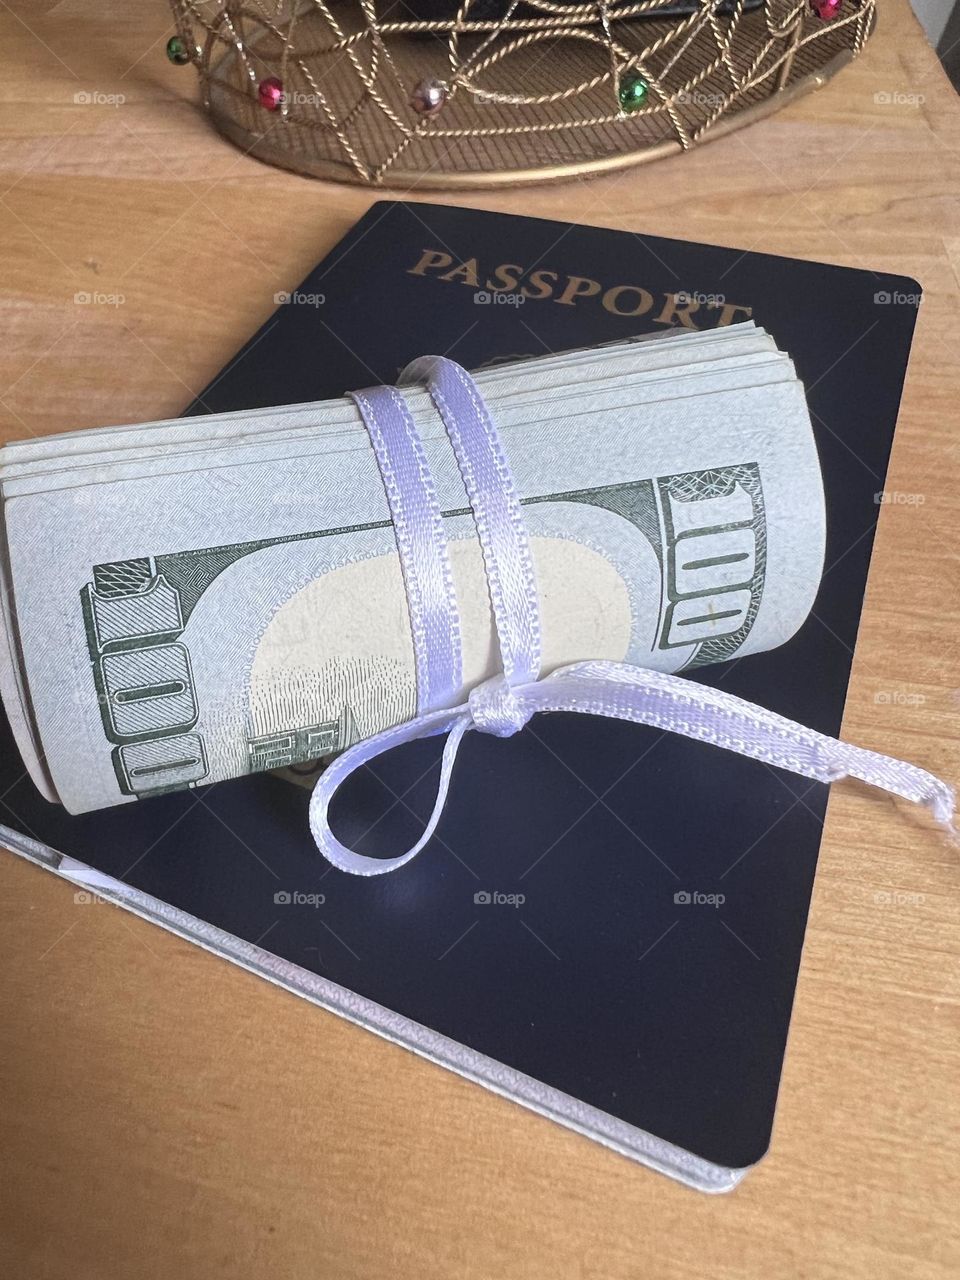 Money savings for travel